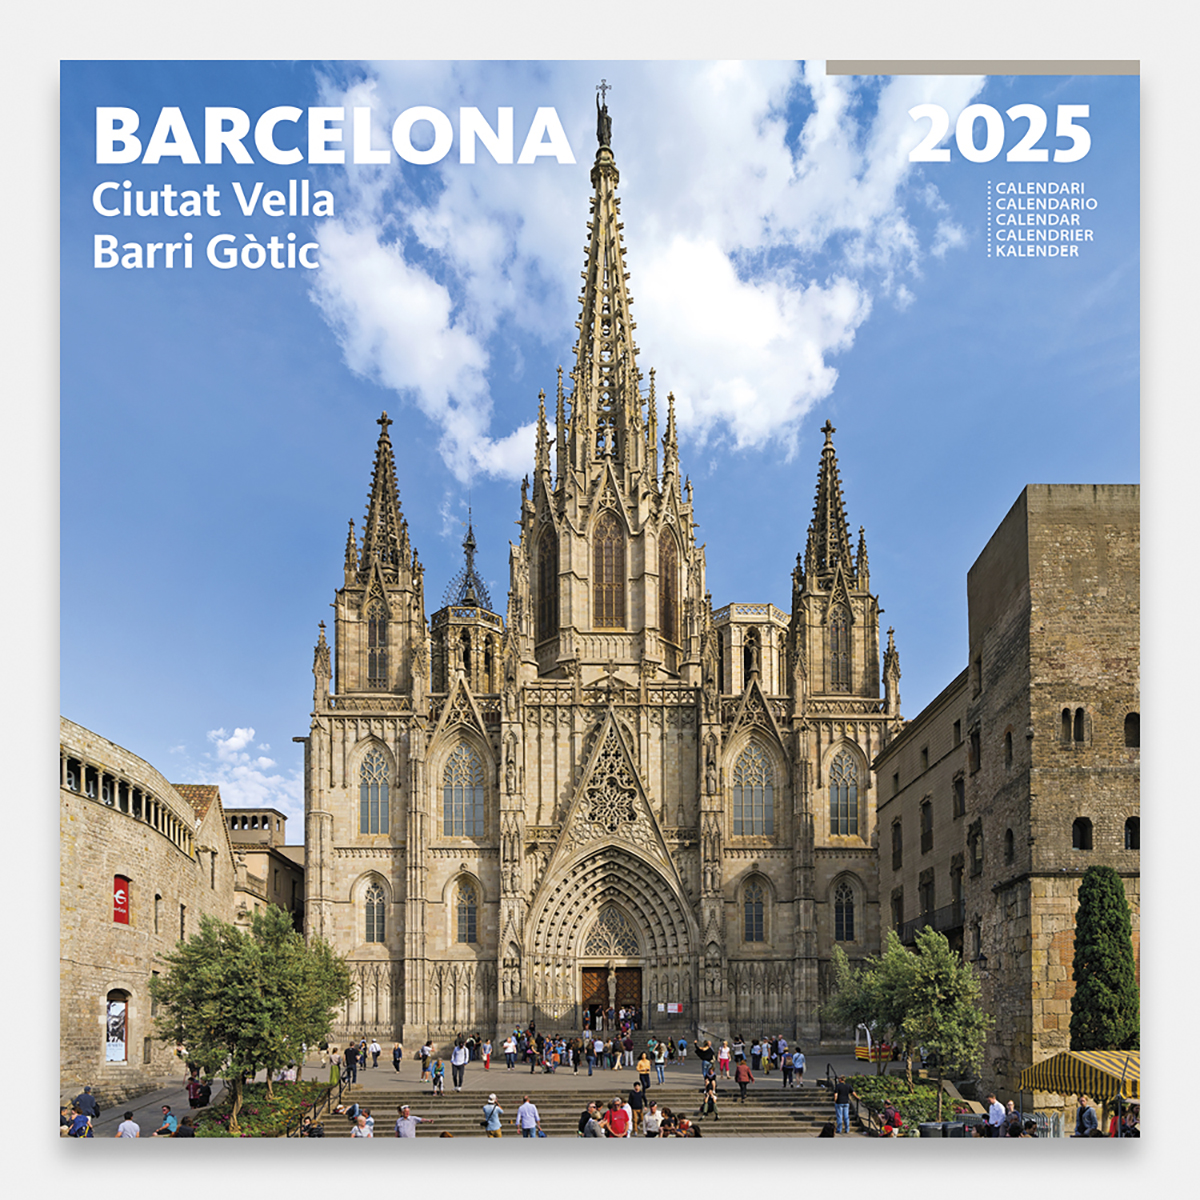 Calendario 2025 Barcelona. Ciutat Vella 25bg3 calendario pared 2025 barcelona